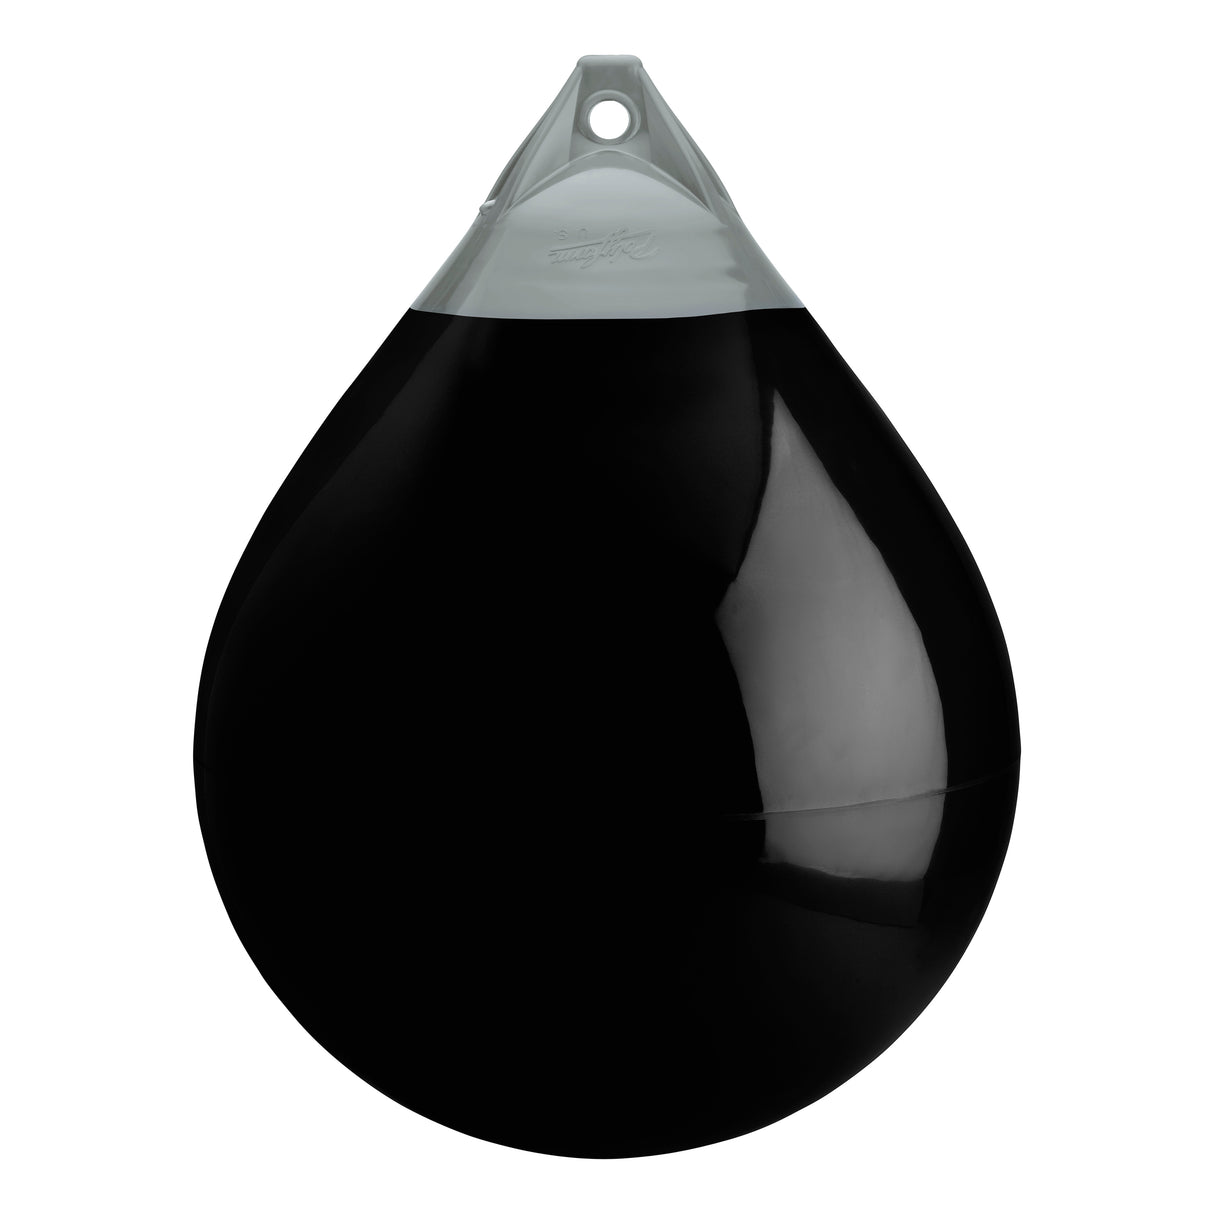 Black buoy with Grey-Top, Polyform A-6